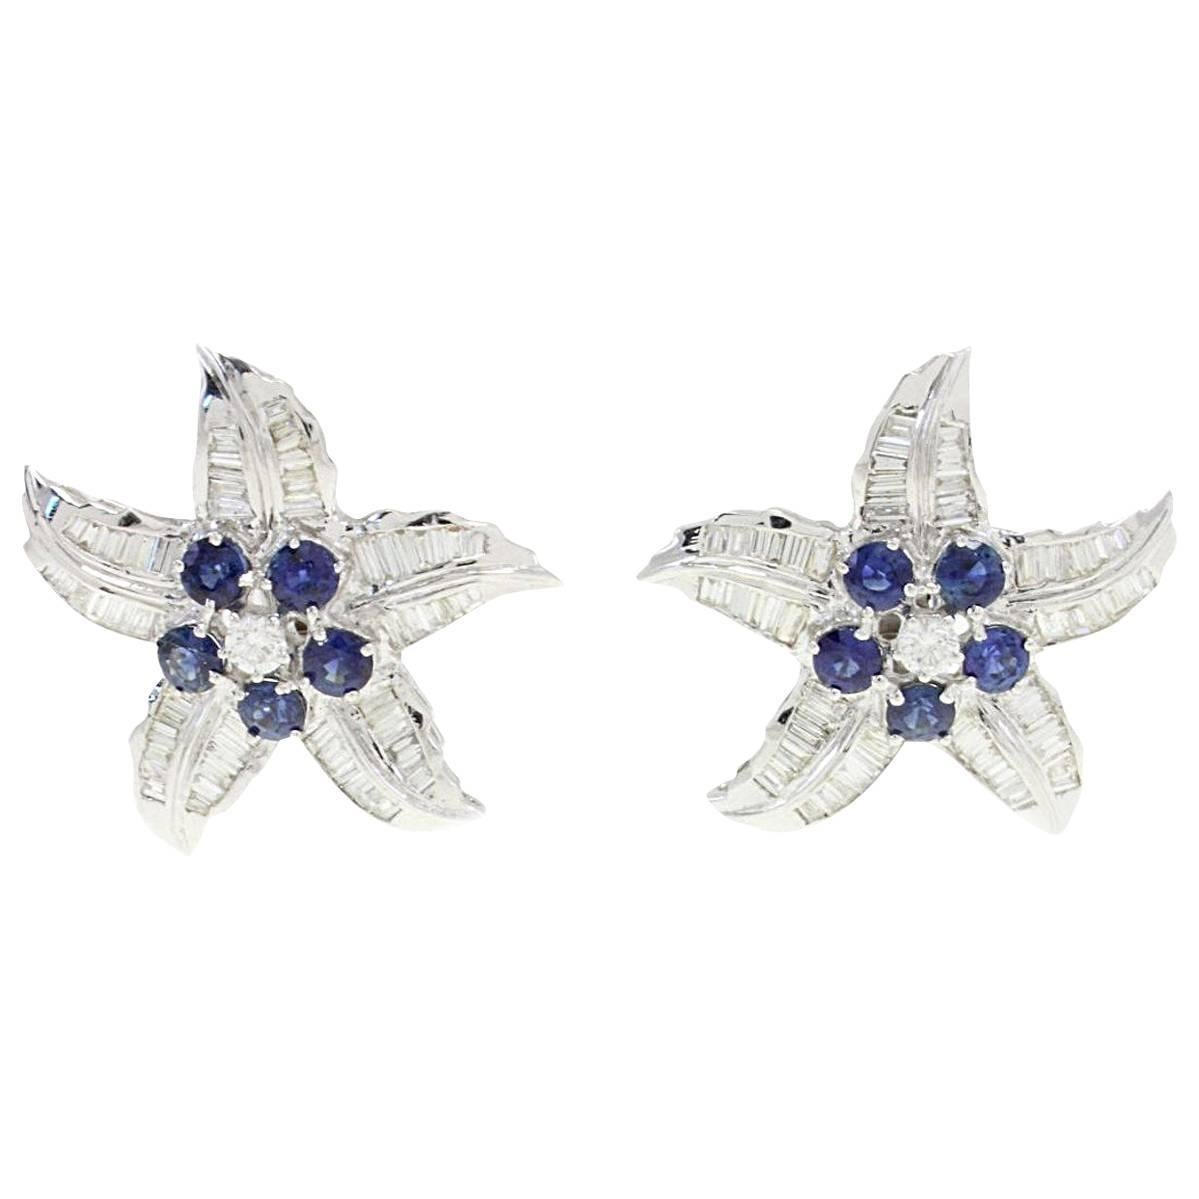  Baguette Cut Diamond Blue Sapphire Star Earrings